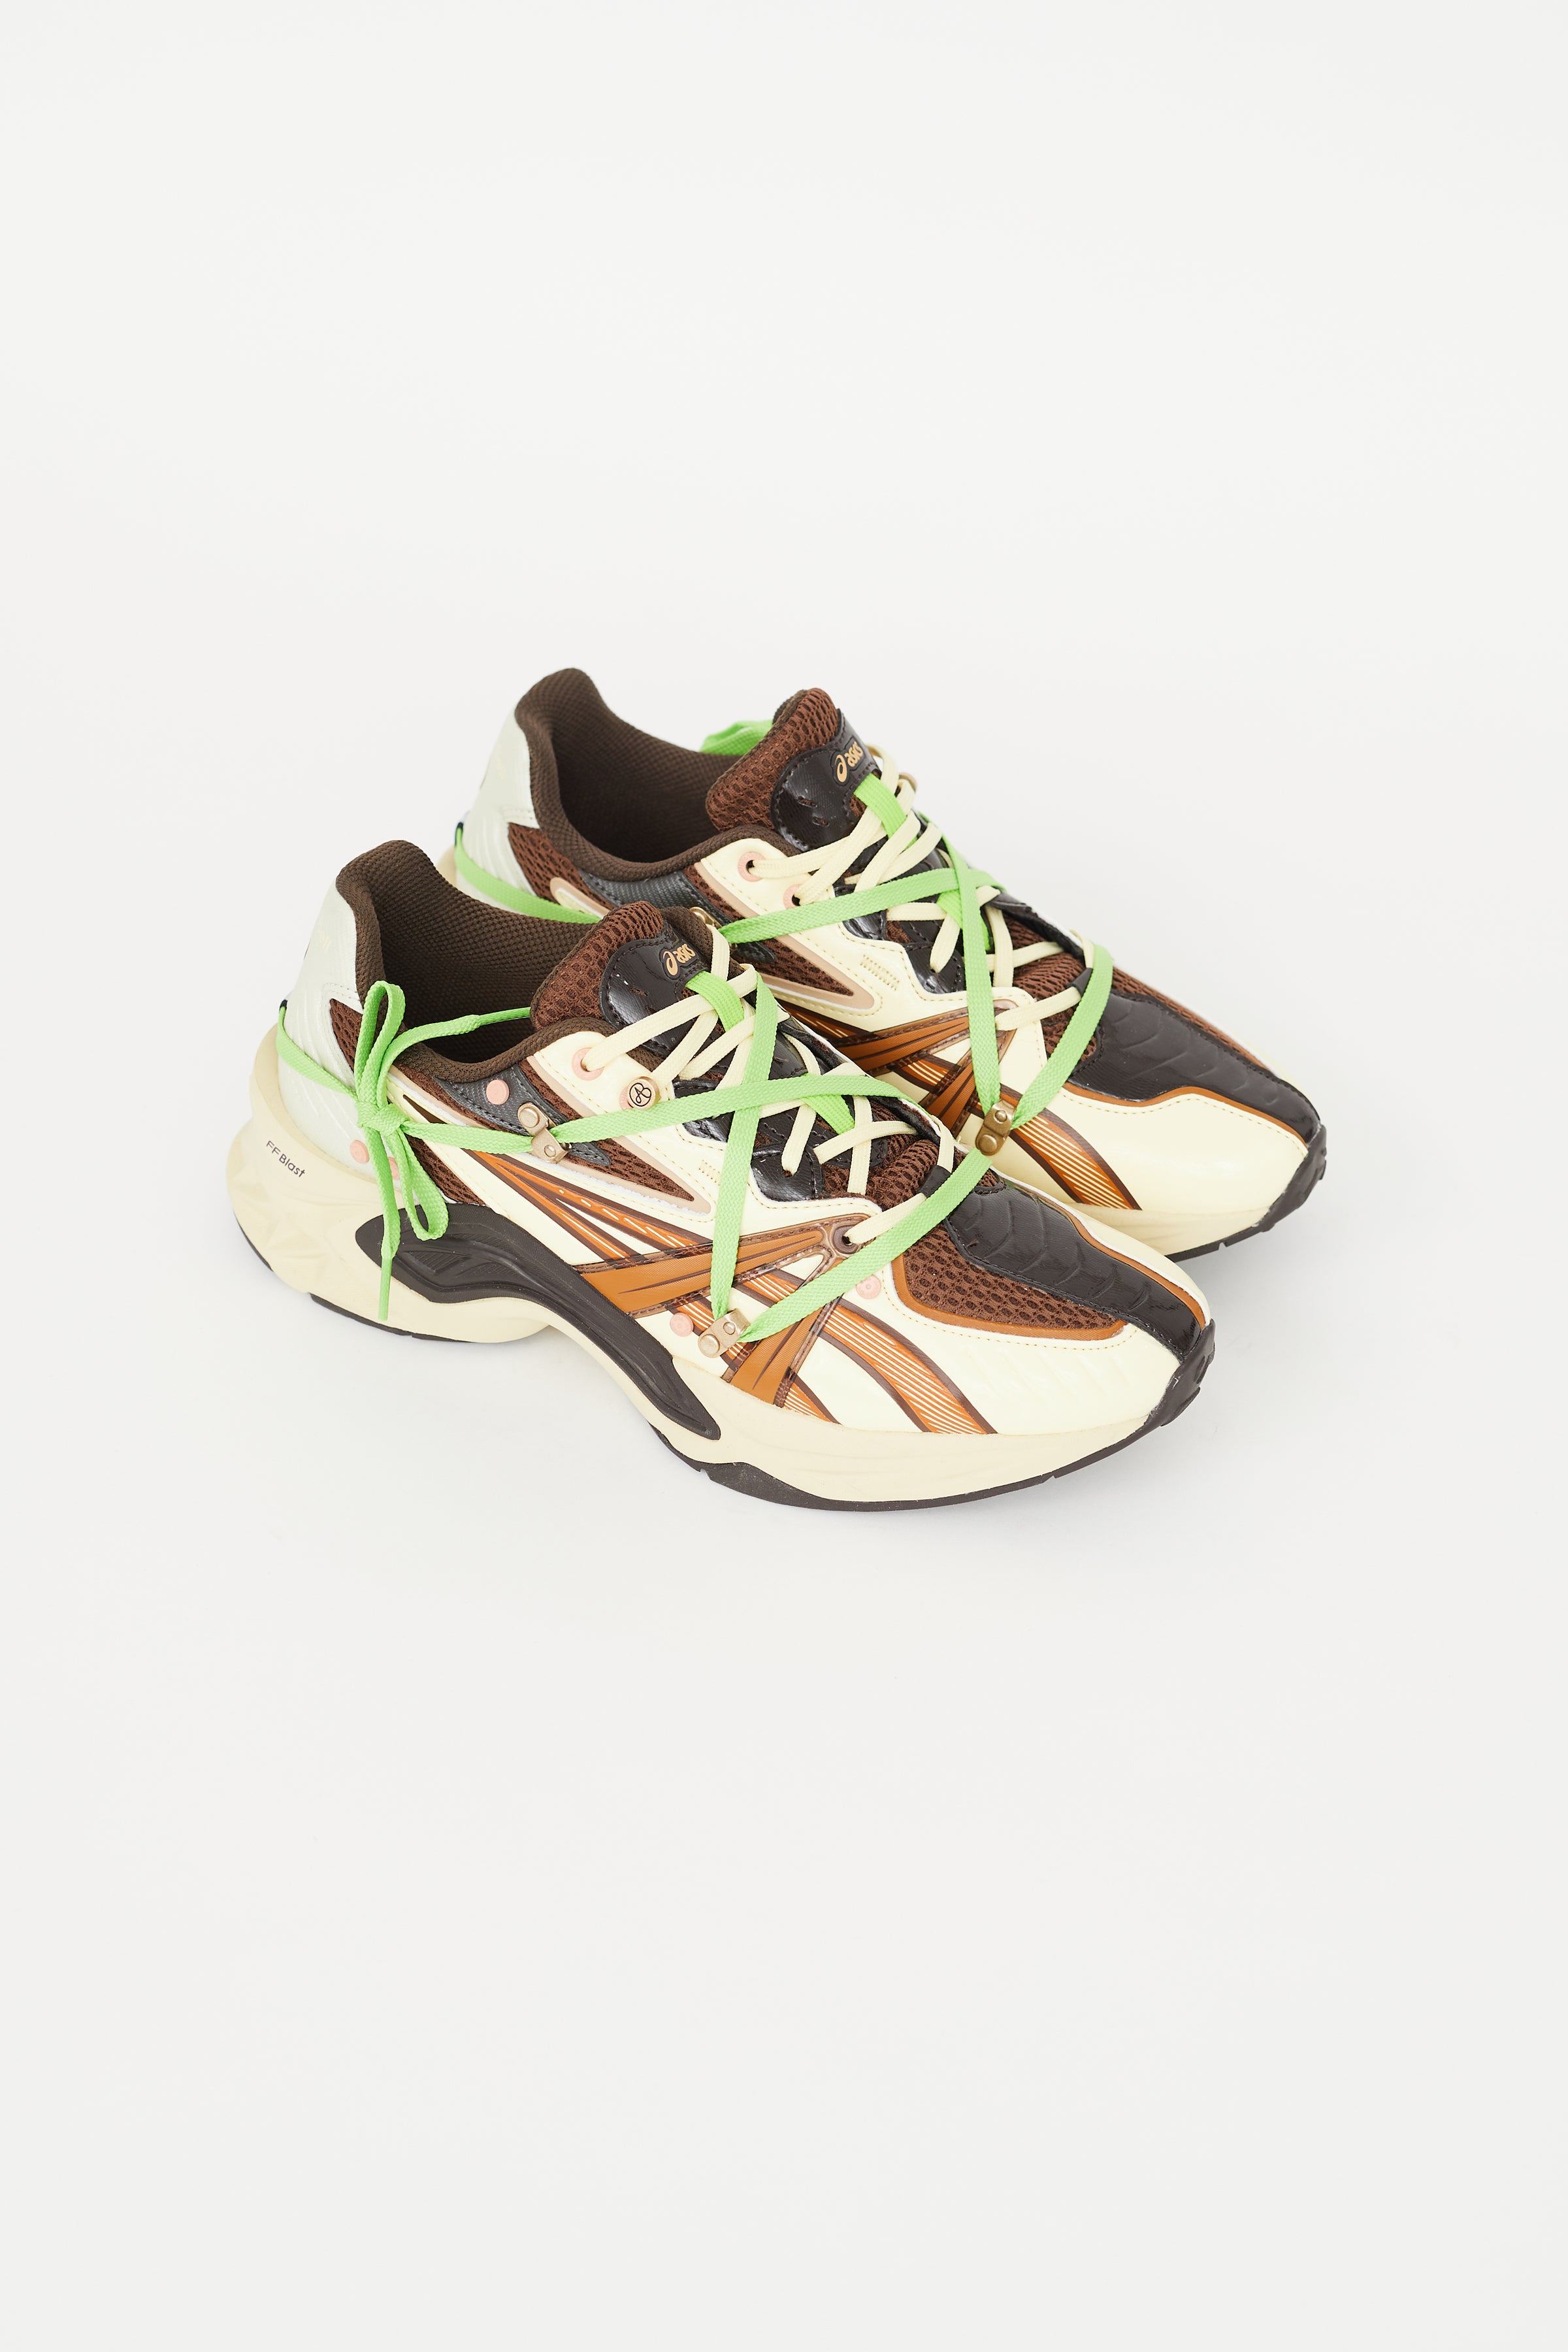 Asics // x Andersson Bell Beige & Multi HN2-S Protoblast Sneaker